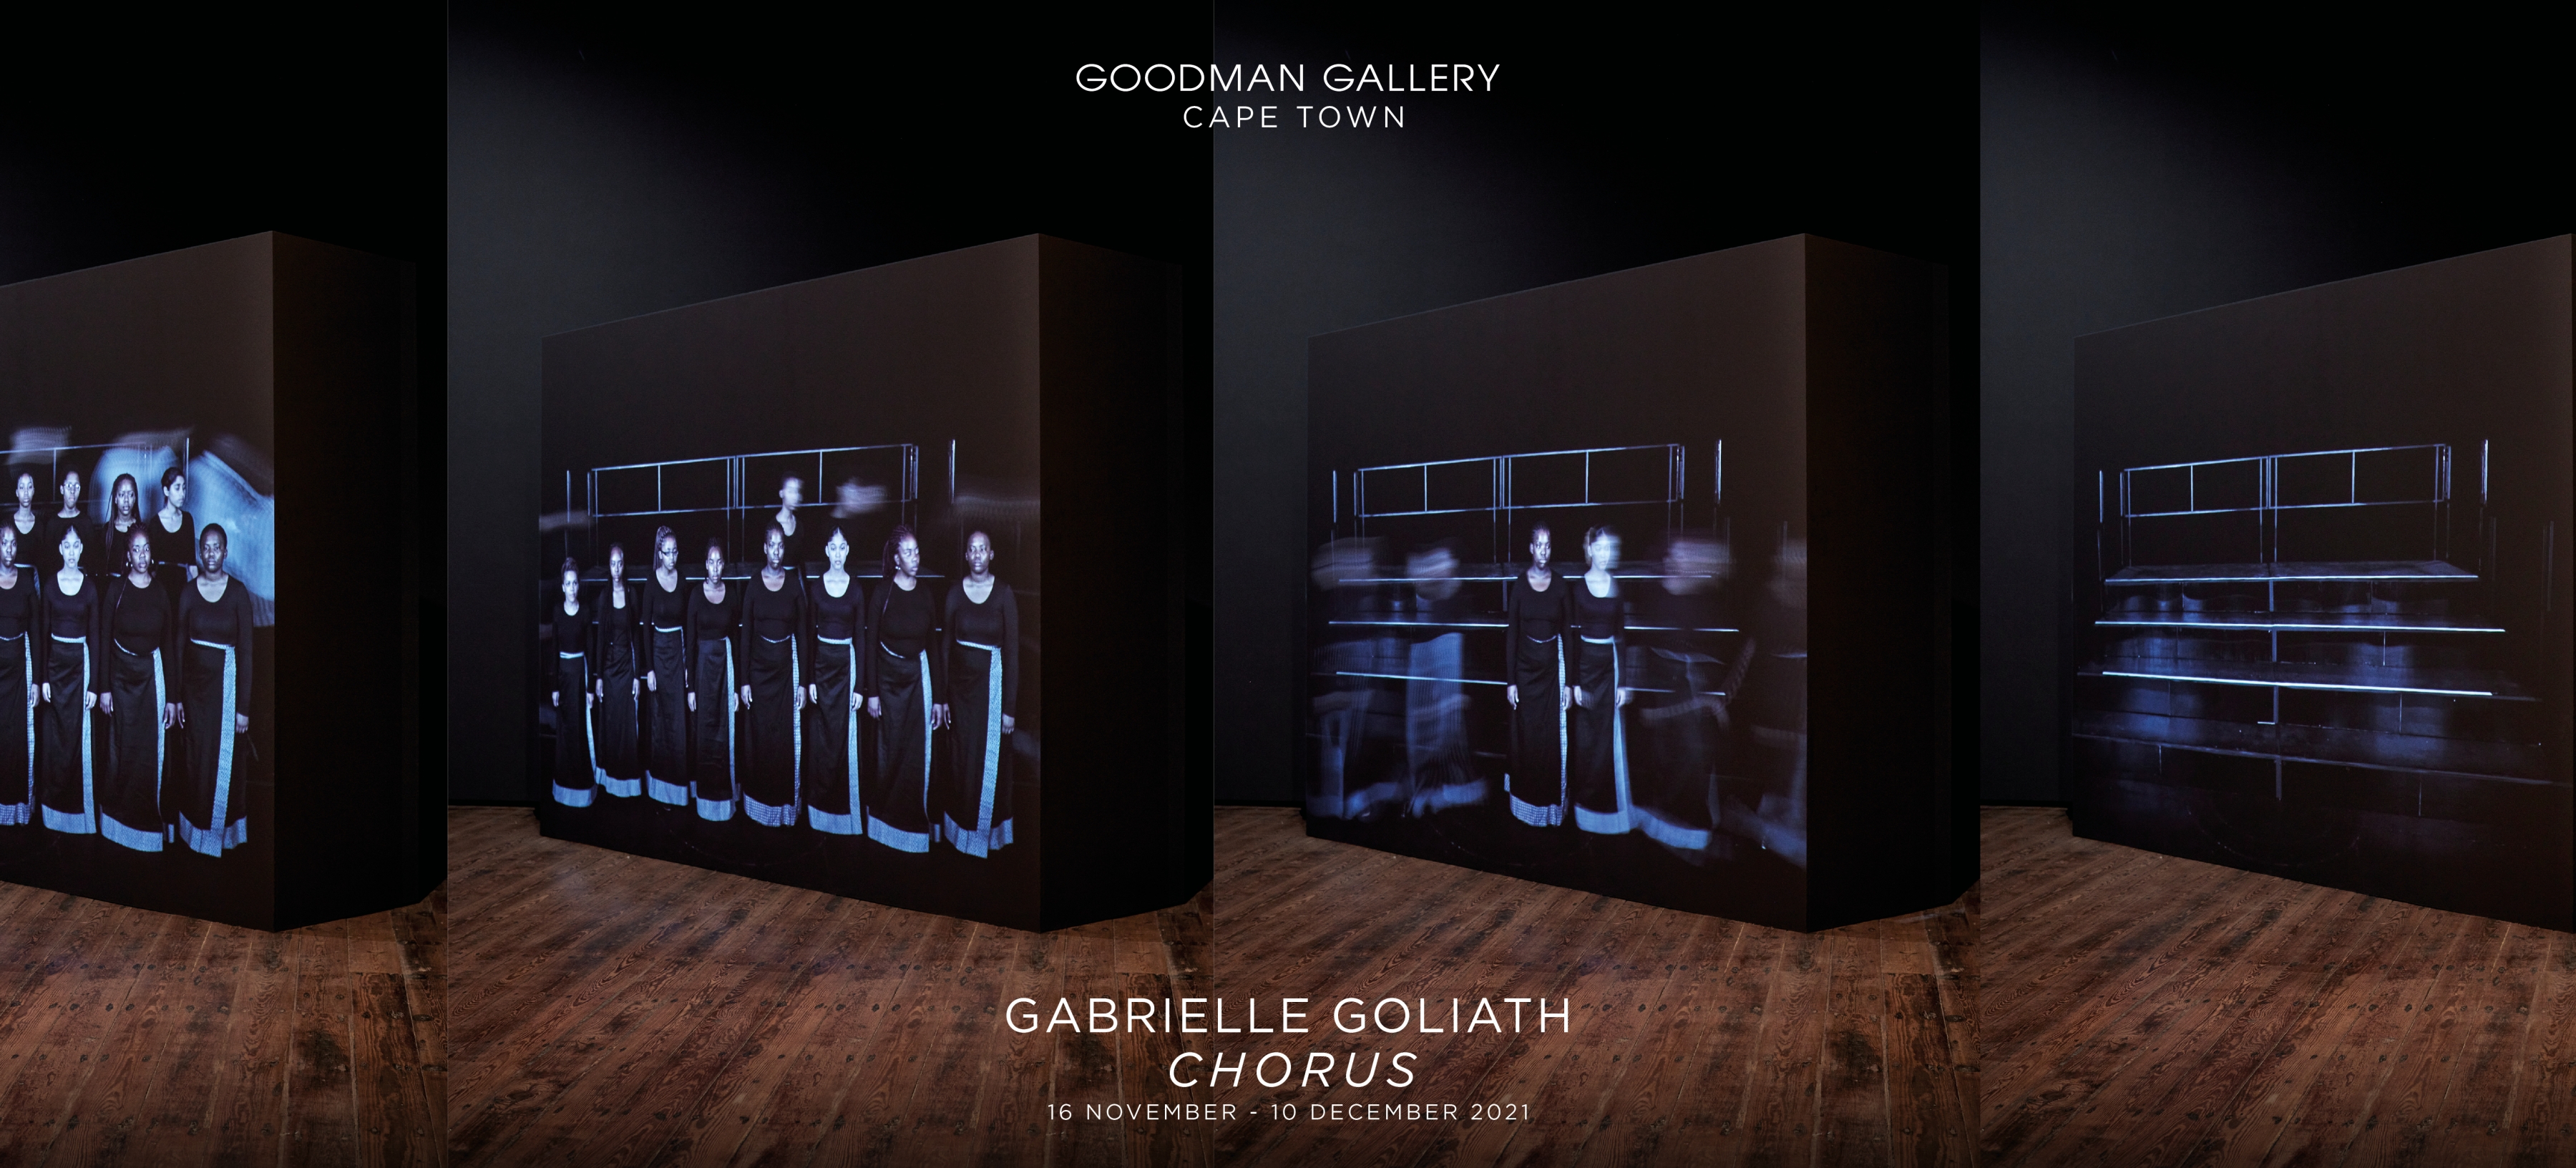 Gabrielle Goliath | Chorus